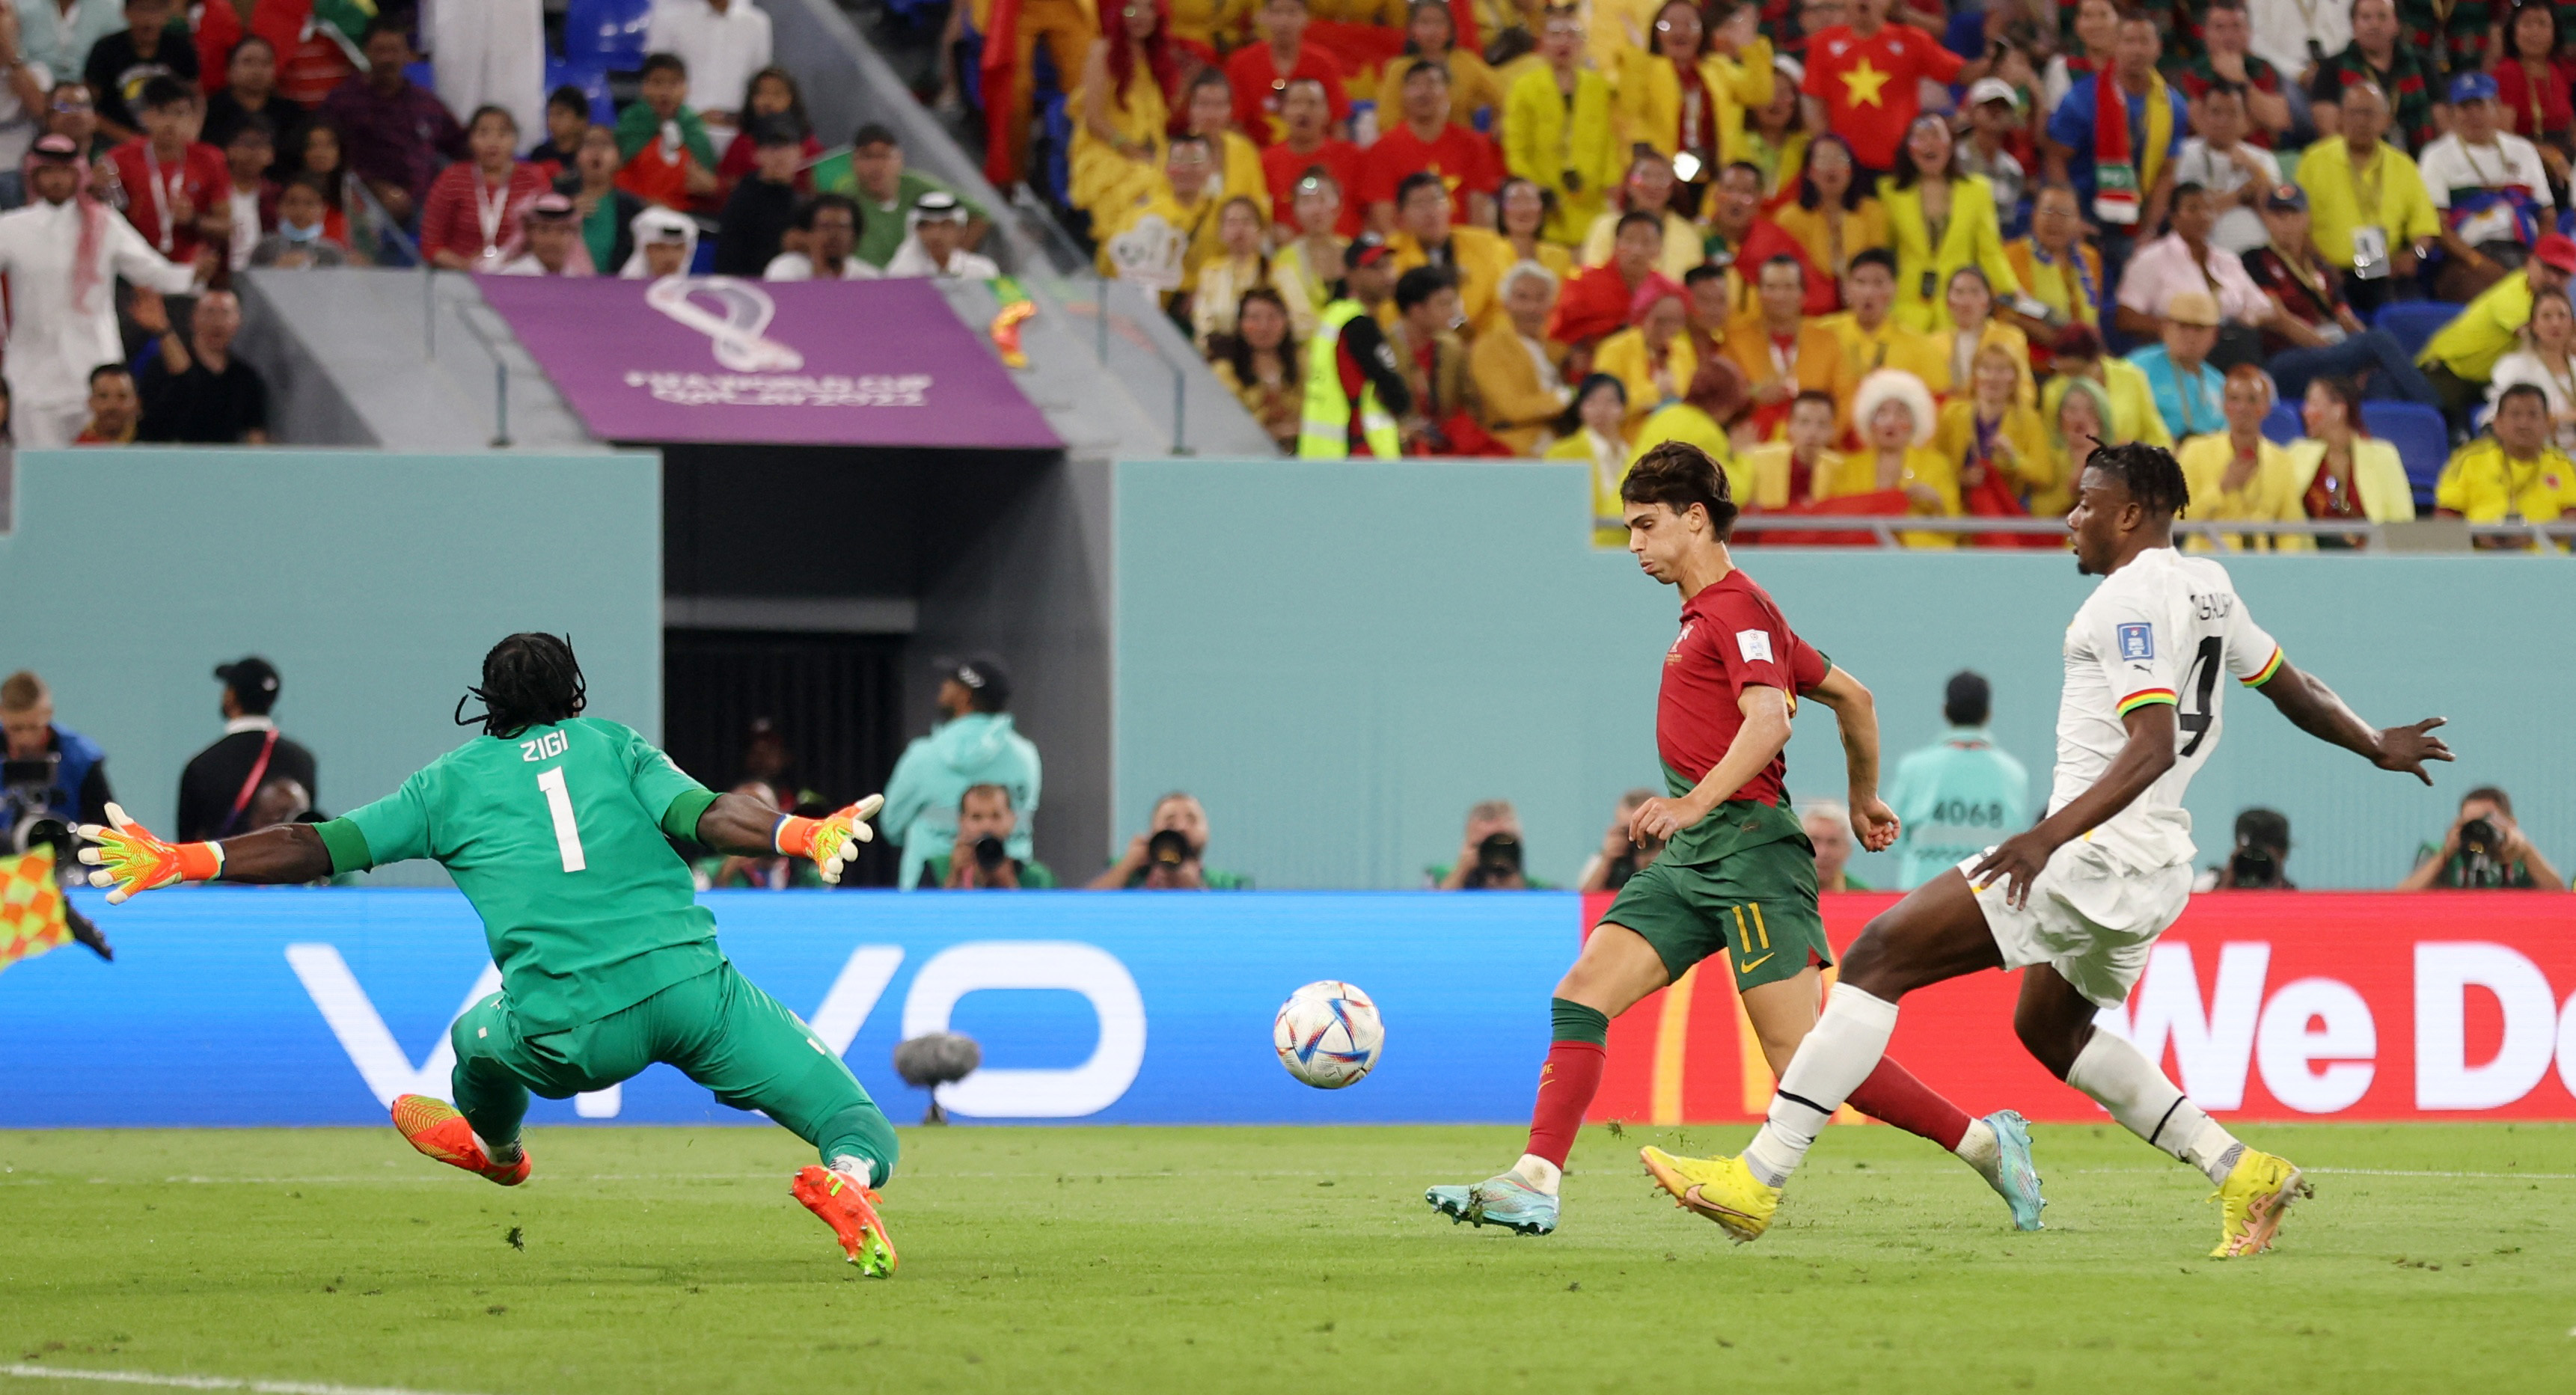 La definición de Joao Félix en el segundo gol de Portugal. Foto: REUTERS/Carl Recine